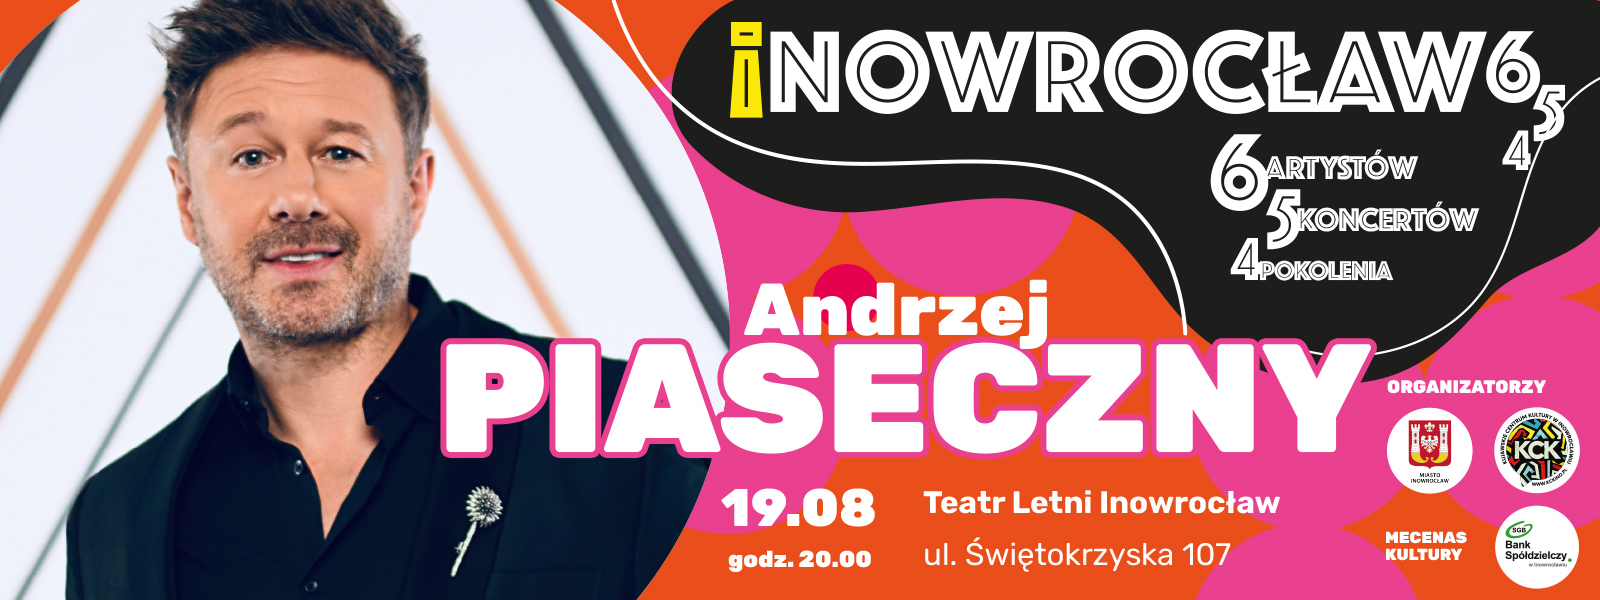 Koncert: Andrzej Piaseczny| Inowrocław 6-5-4